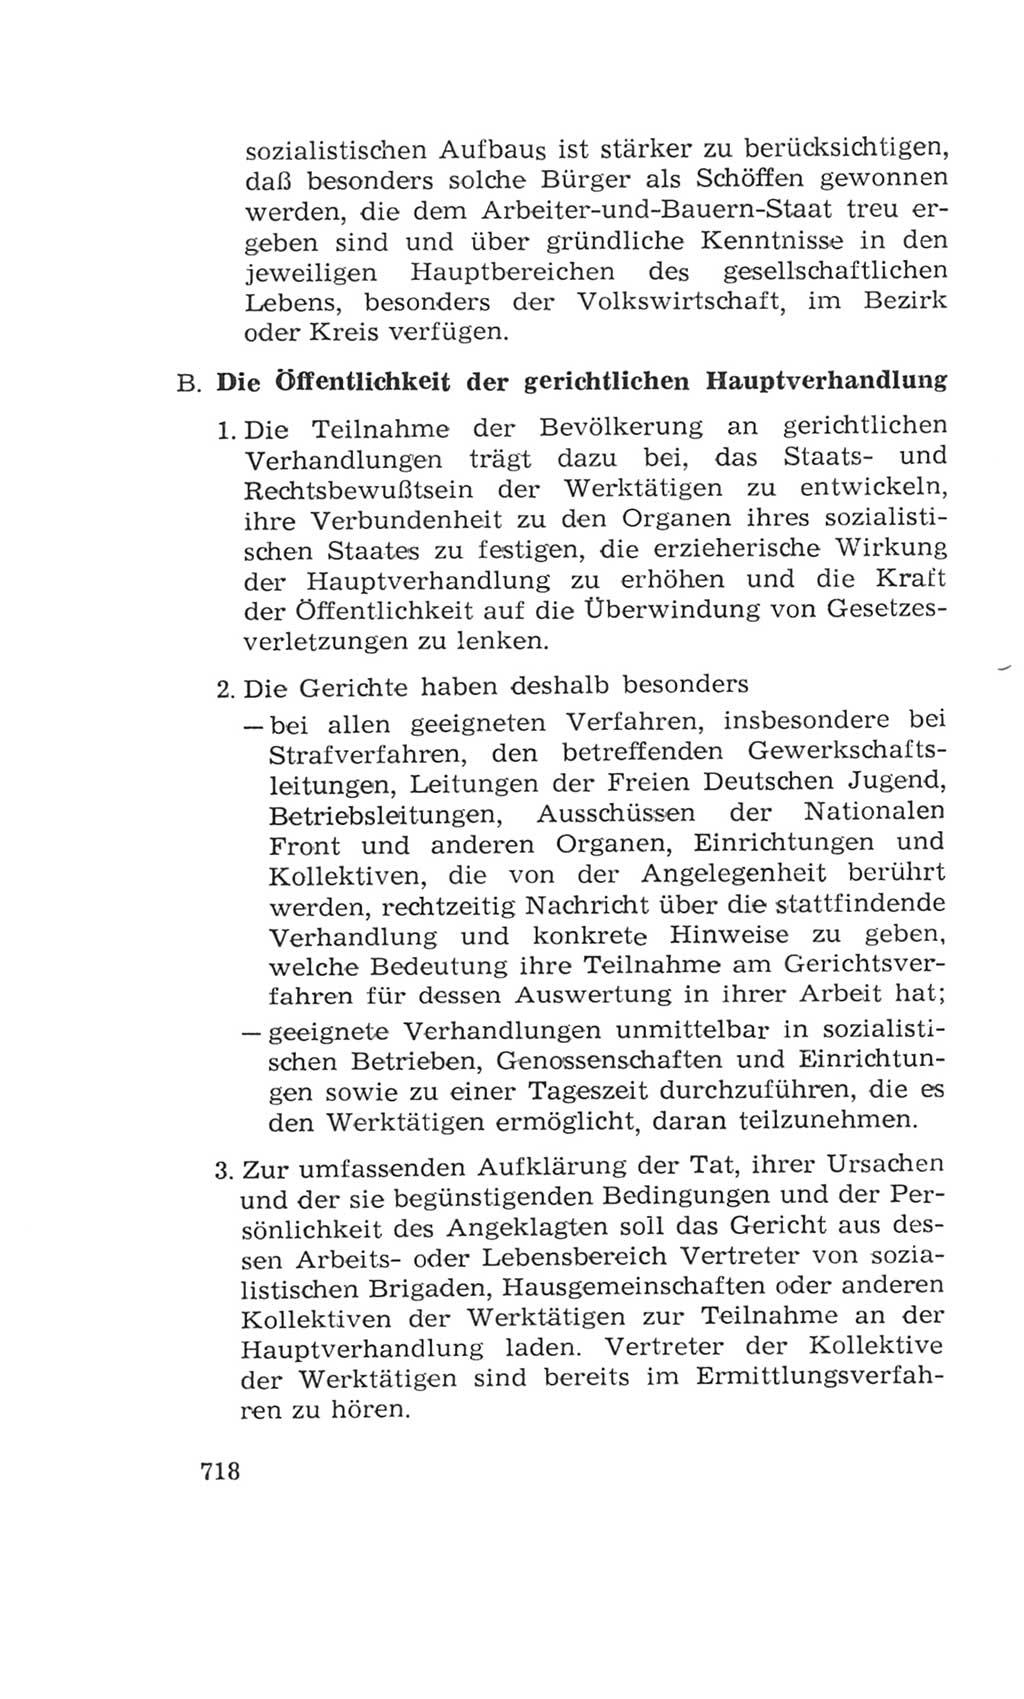 Volkskammer (VK) der Deutschen Demokratischen Republik (DDR), 4. Wahlperiode 1963-1967, Seite 718 (VK. DDR 4. WP. 1963-1967, S. 718)